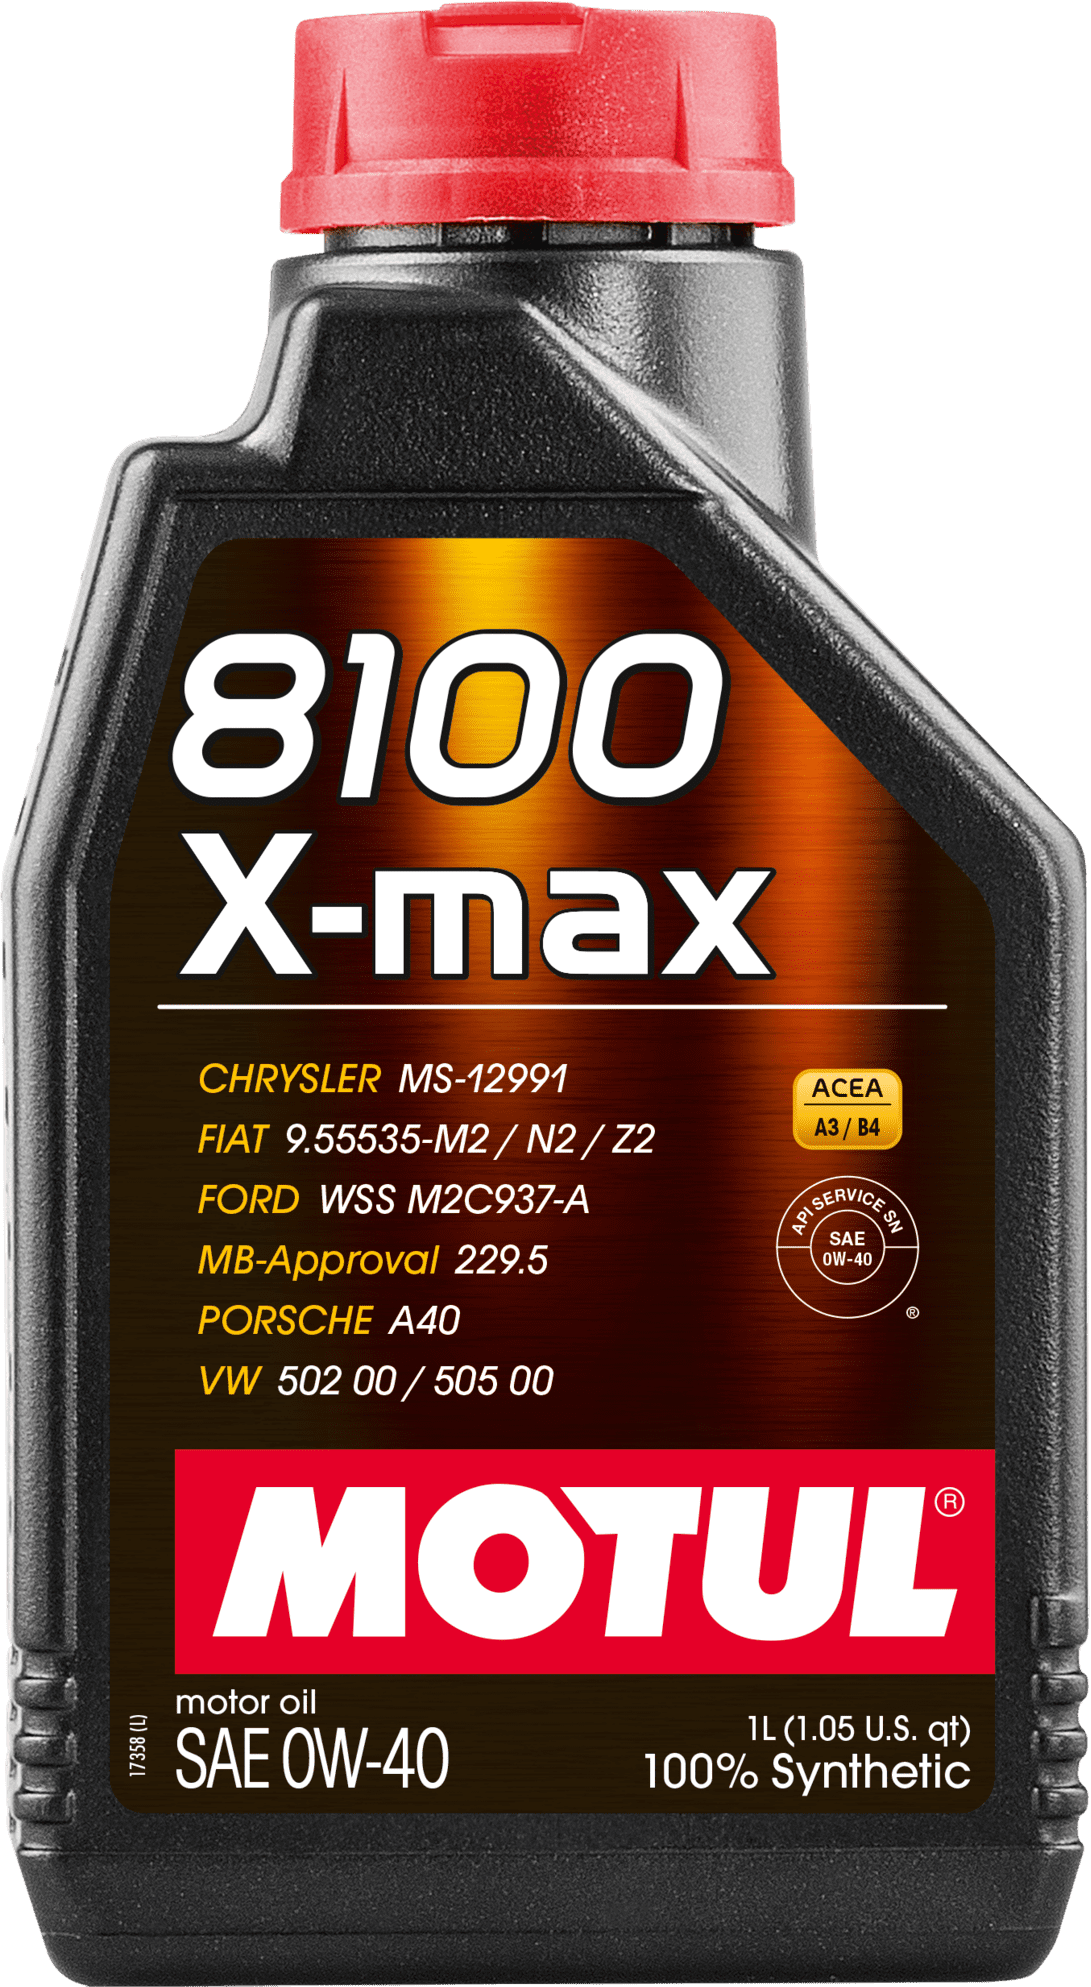 104531-1 100% synthetisch en hoogwaardig smeermiddel.